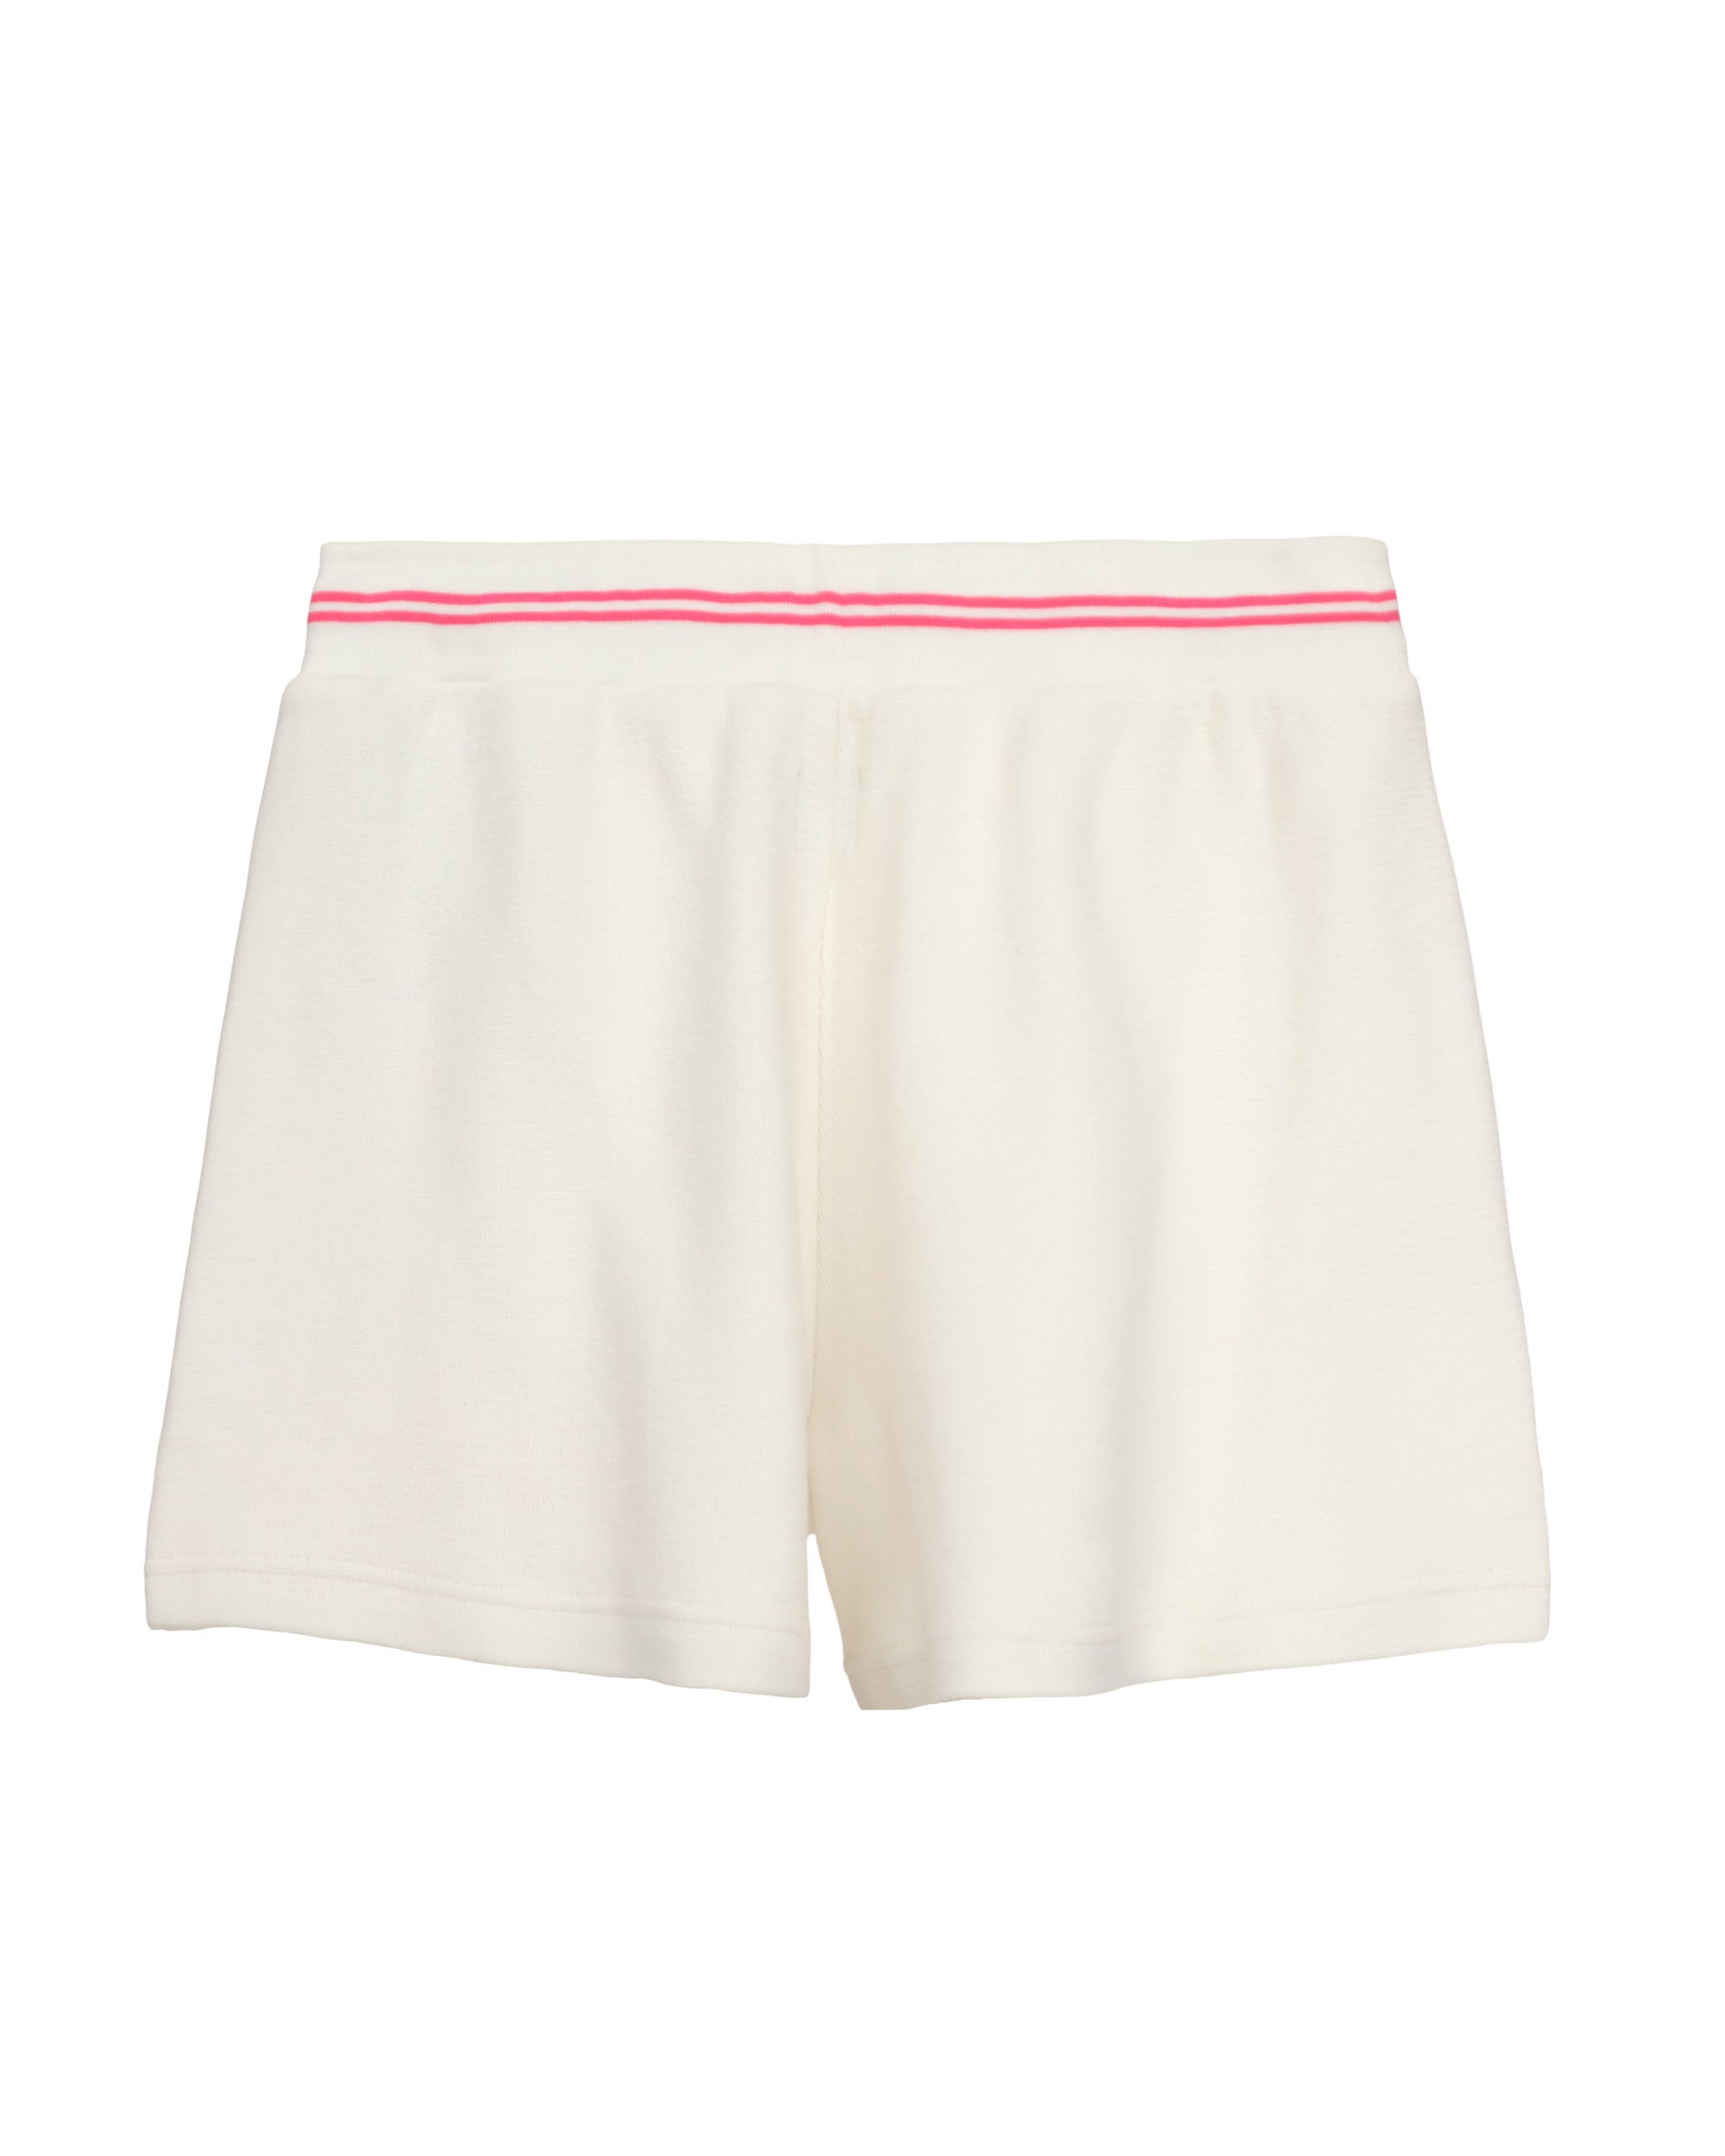 Pink Cherub University Shorts